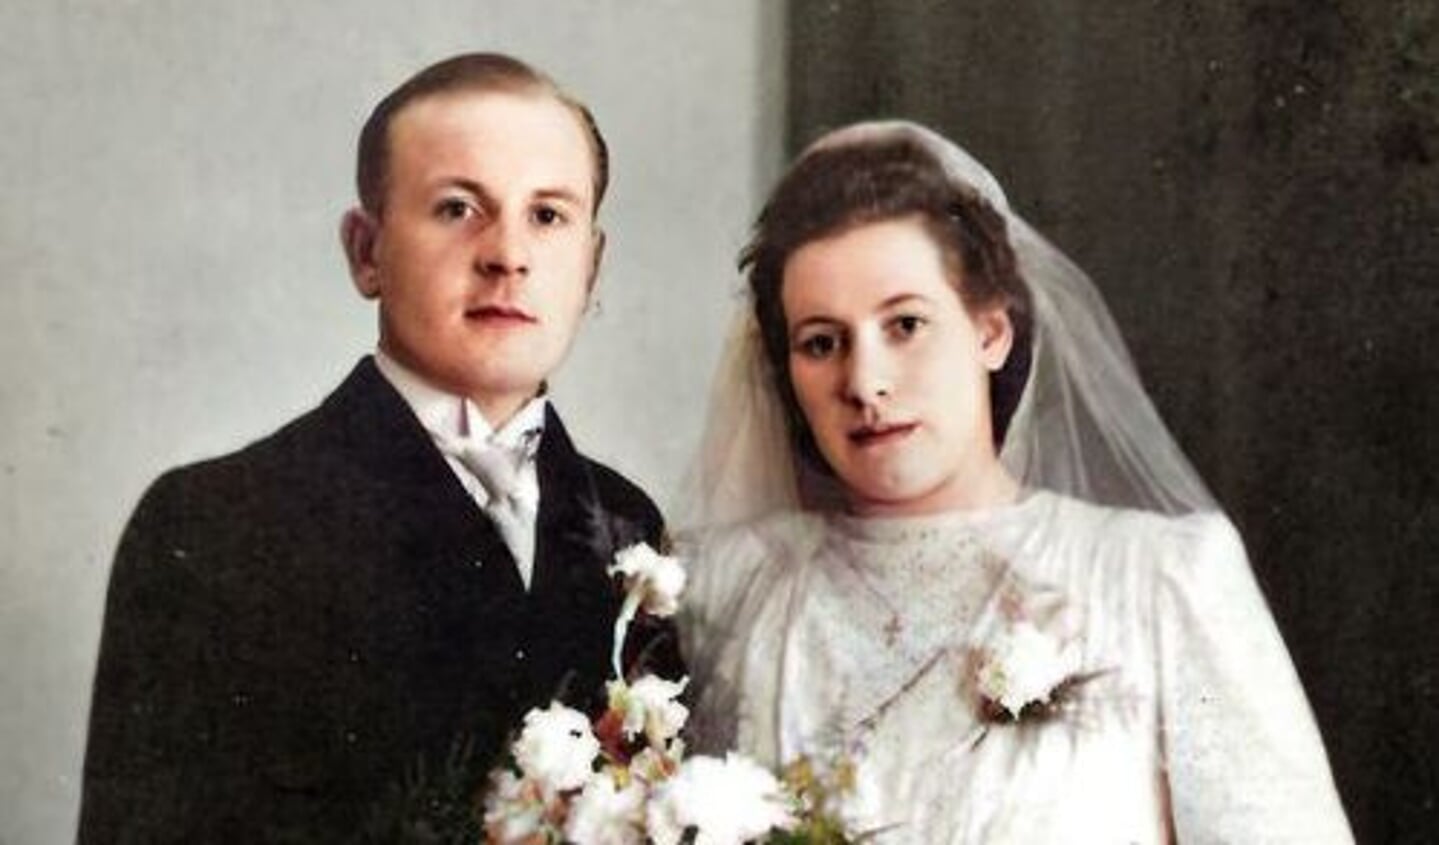 Op 2 maart 1944 traden Herman Struik en Corrie Bode in Amersfoort in het huwelijk. Alleen de familie was aanwezig en Herman droeg een burgerpak.